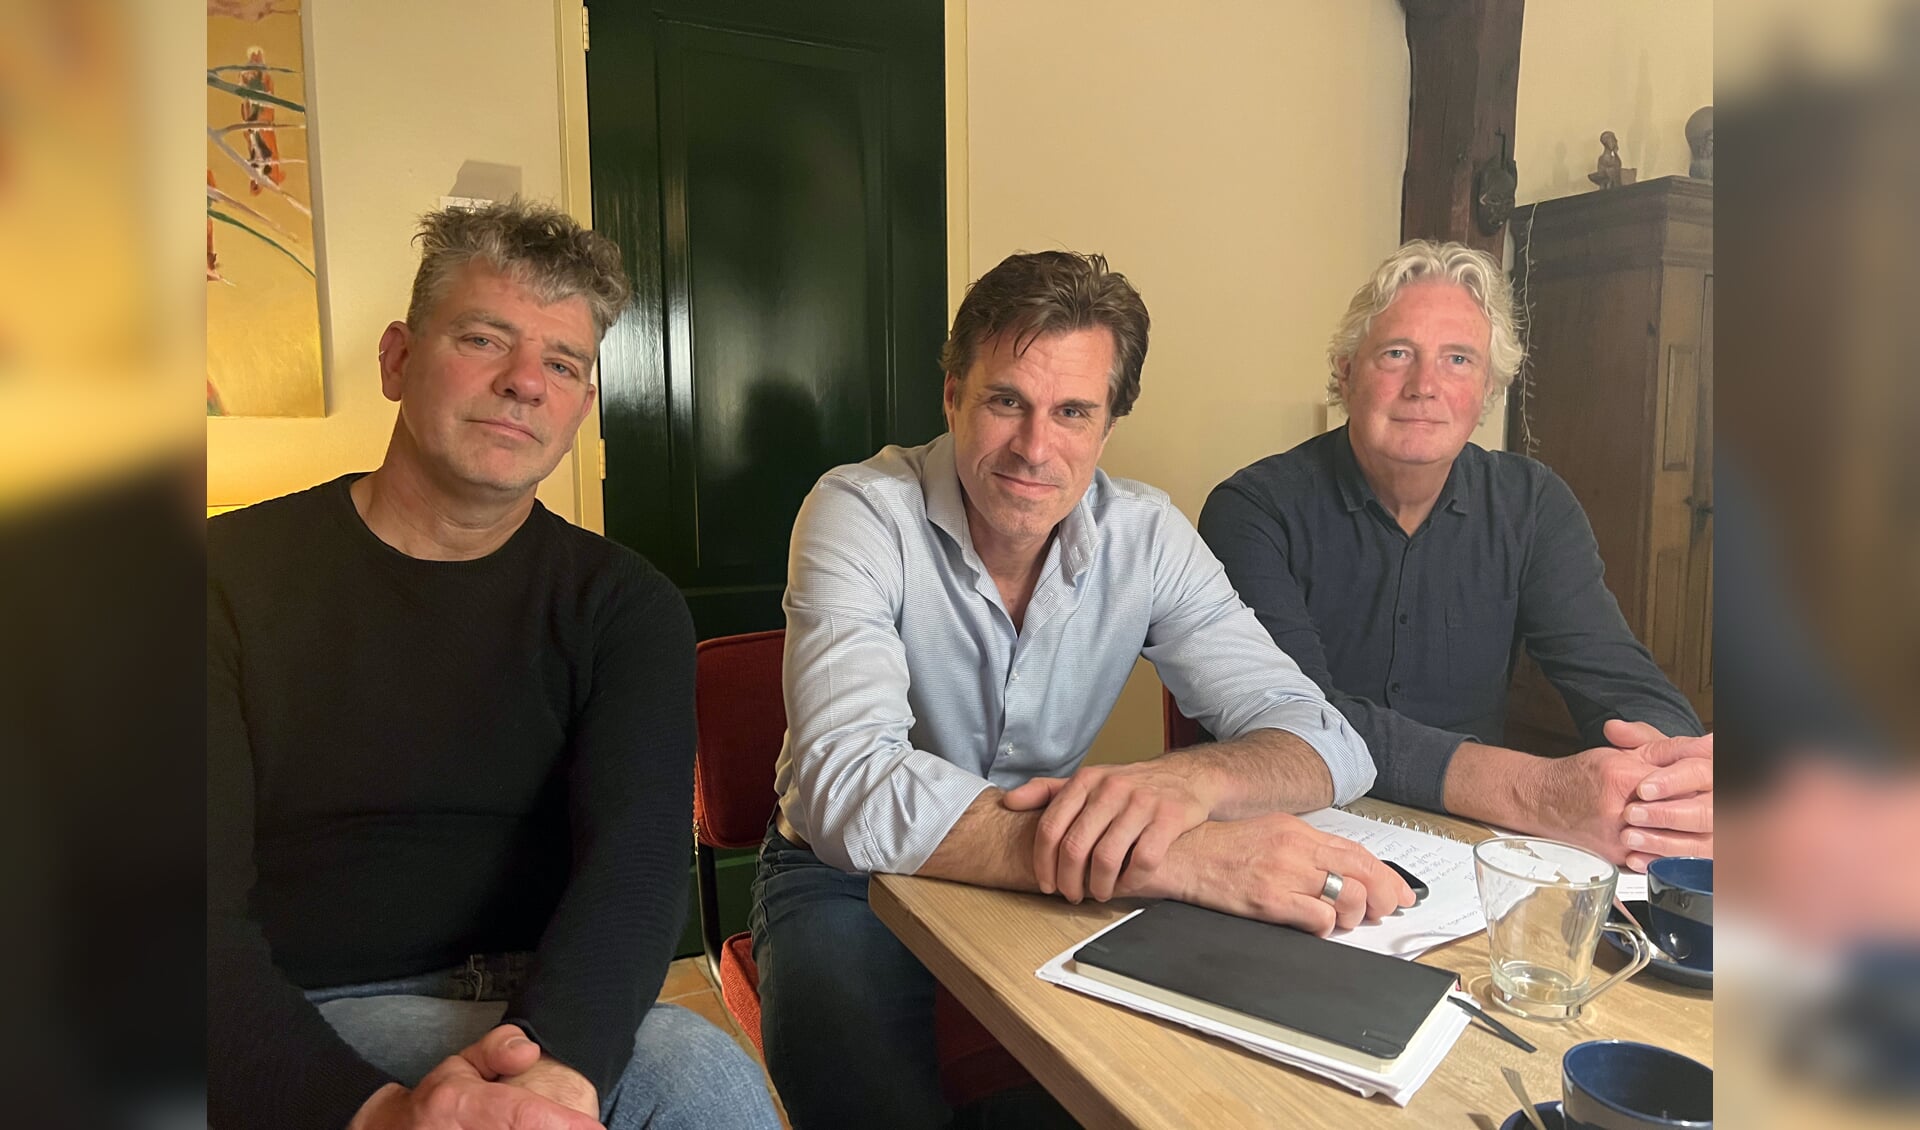 De bestuursleden van Windkracht K (vlnr): Chris van Trigt (penningmeester), Jan Bosch (voorzitter) en Jan Schoenmakers (secretaris). Foto: PR